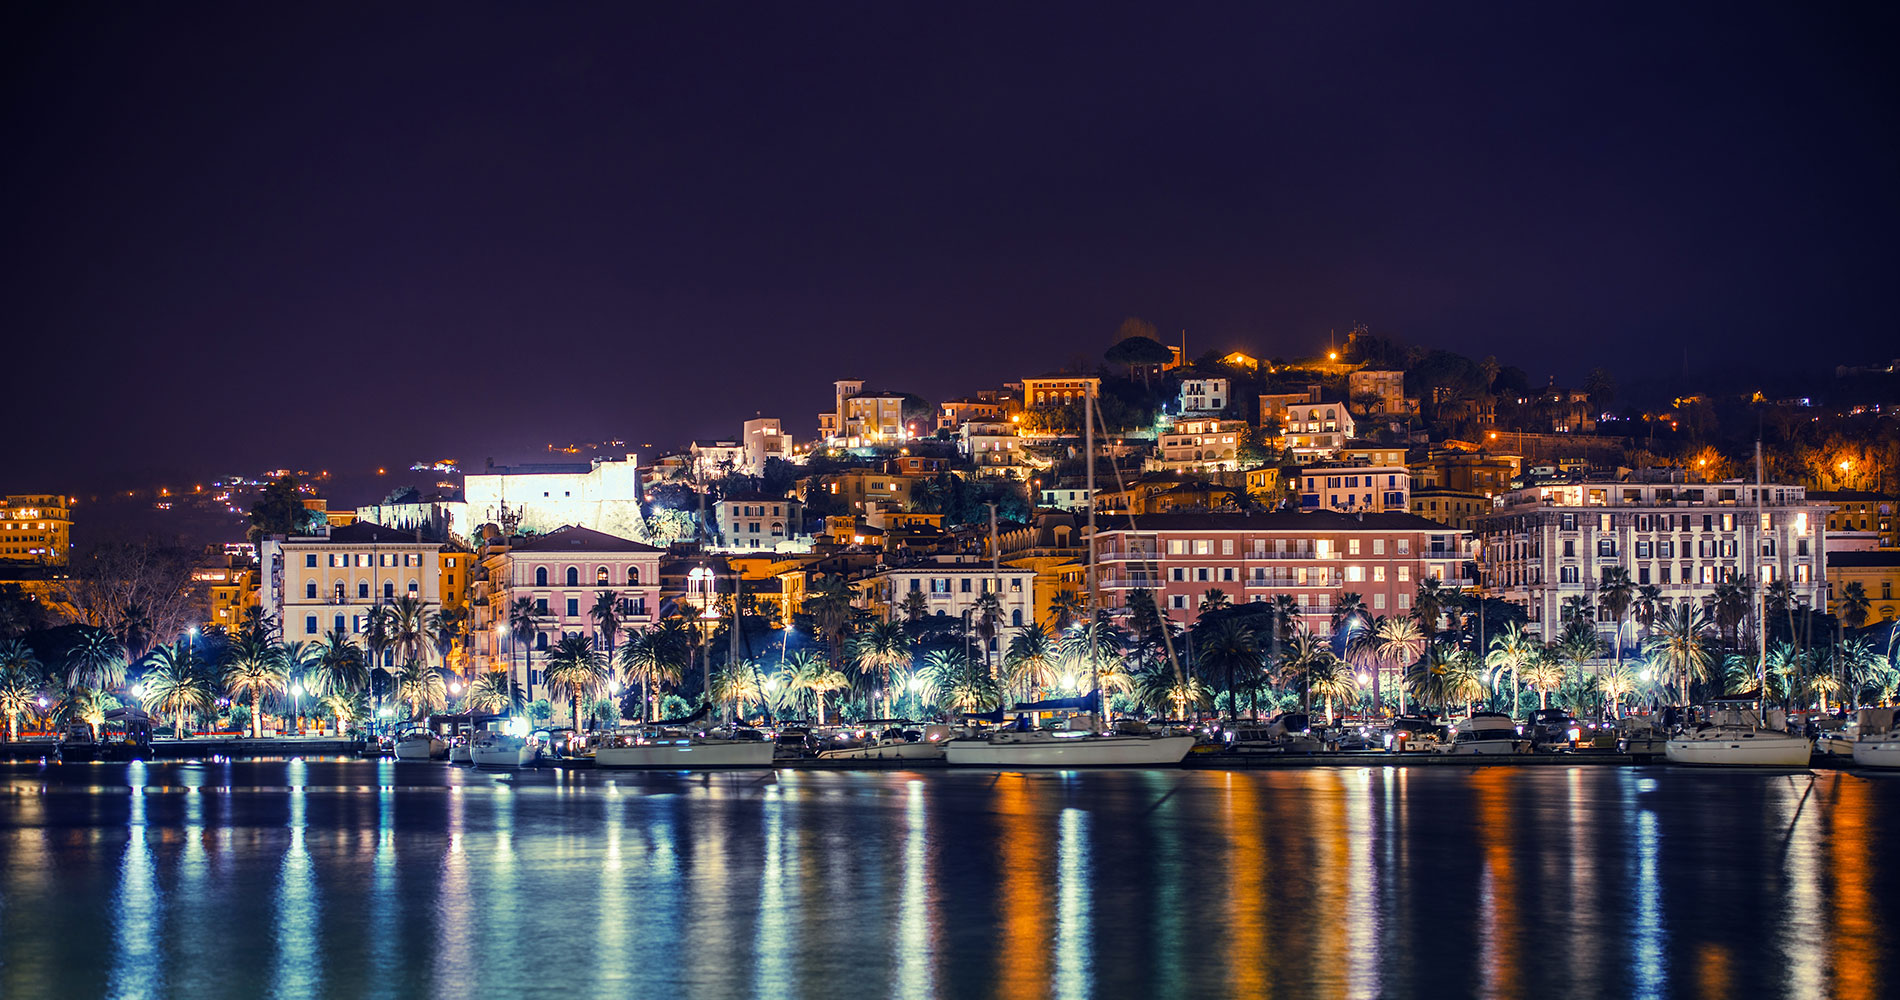 Nachtaufnahme der Stadt La Spezia